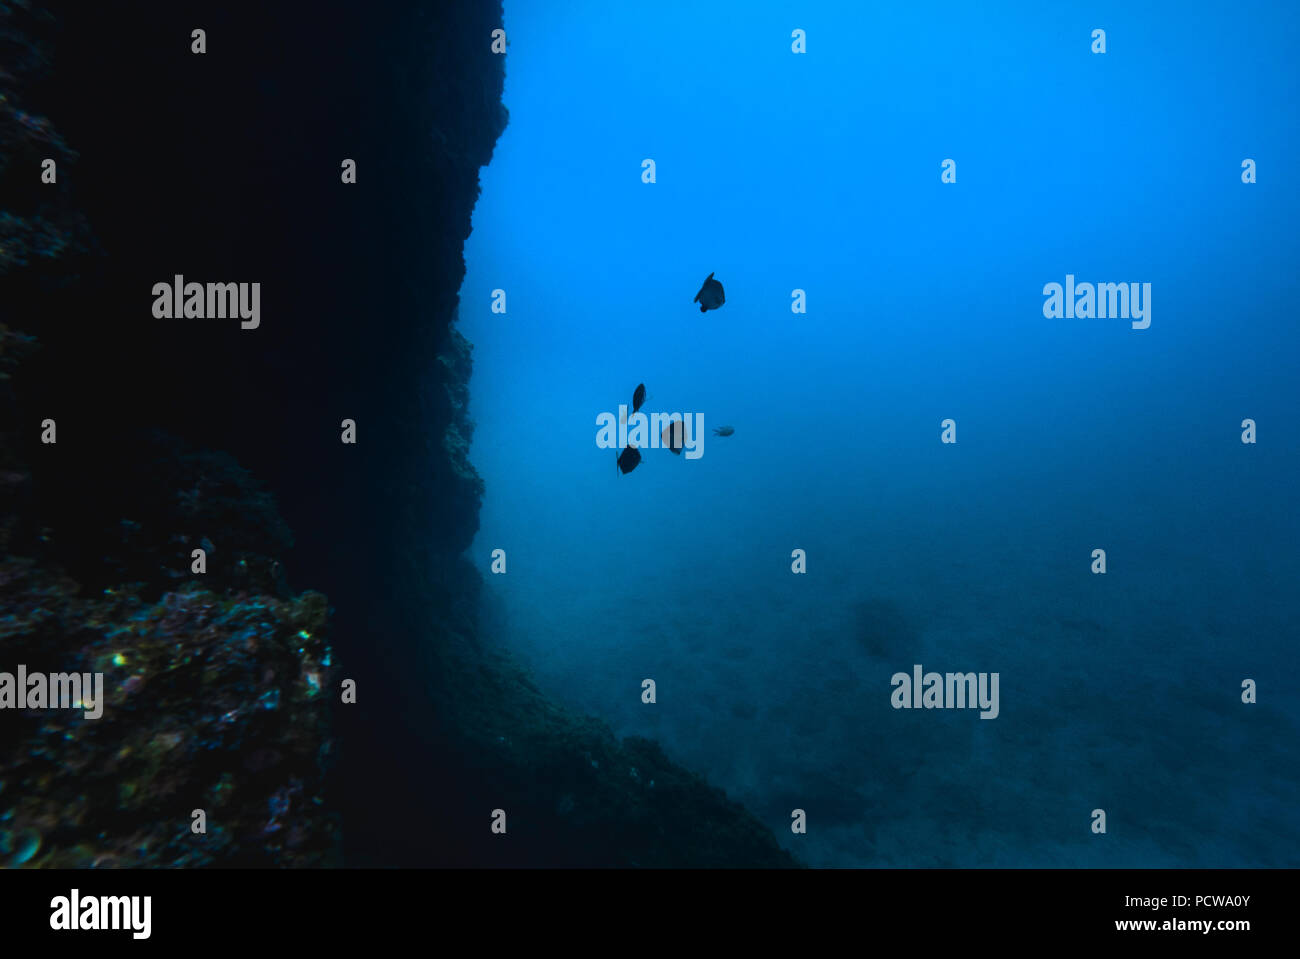 Underwater rocky bottom Stock Photo - Alamy